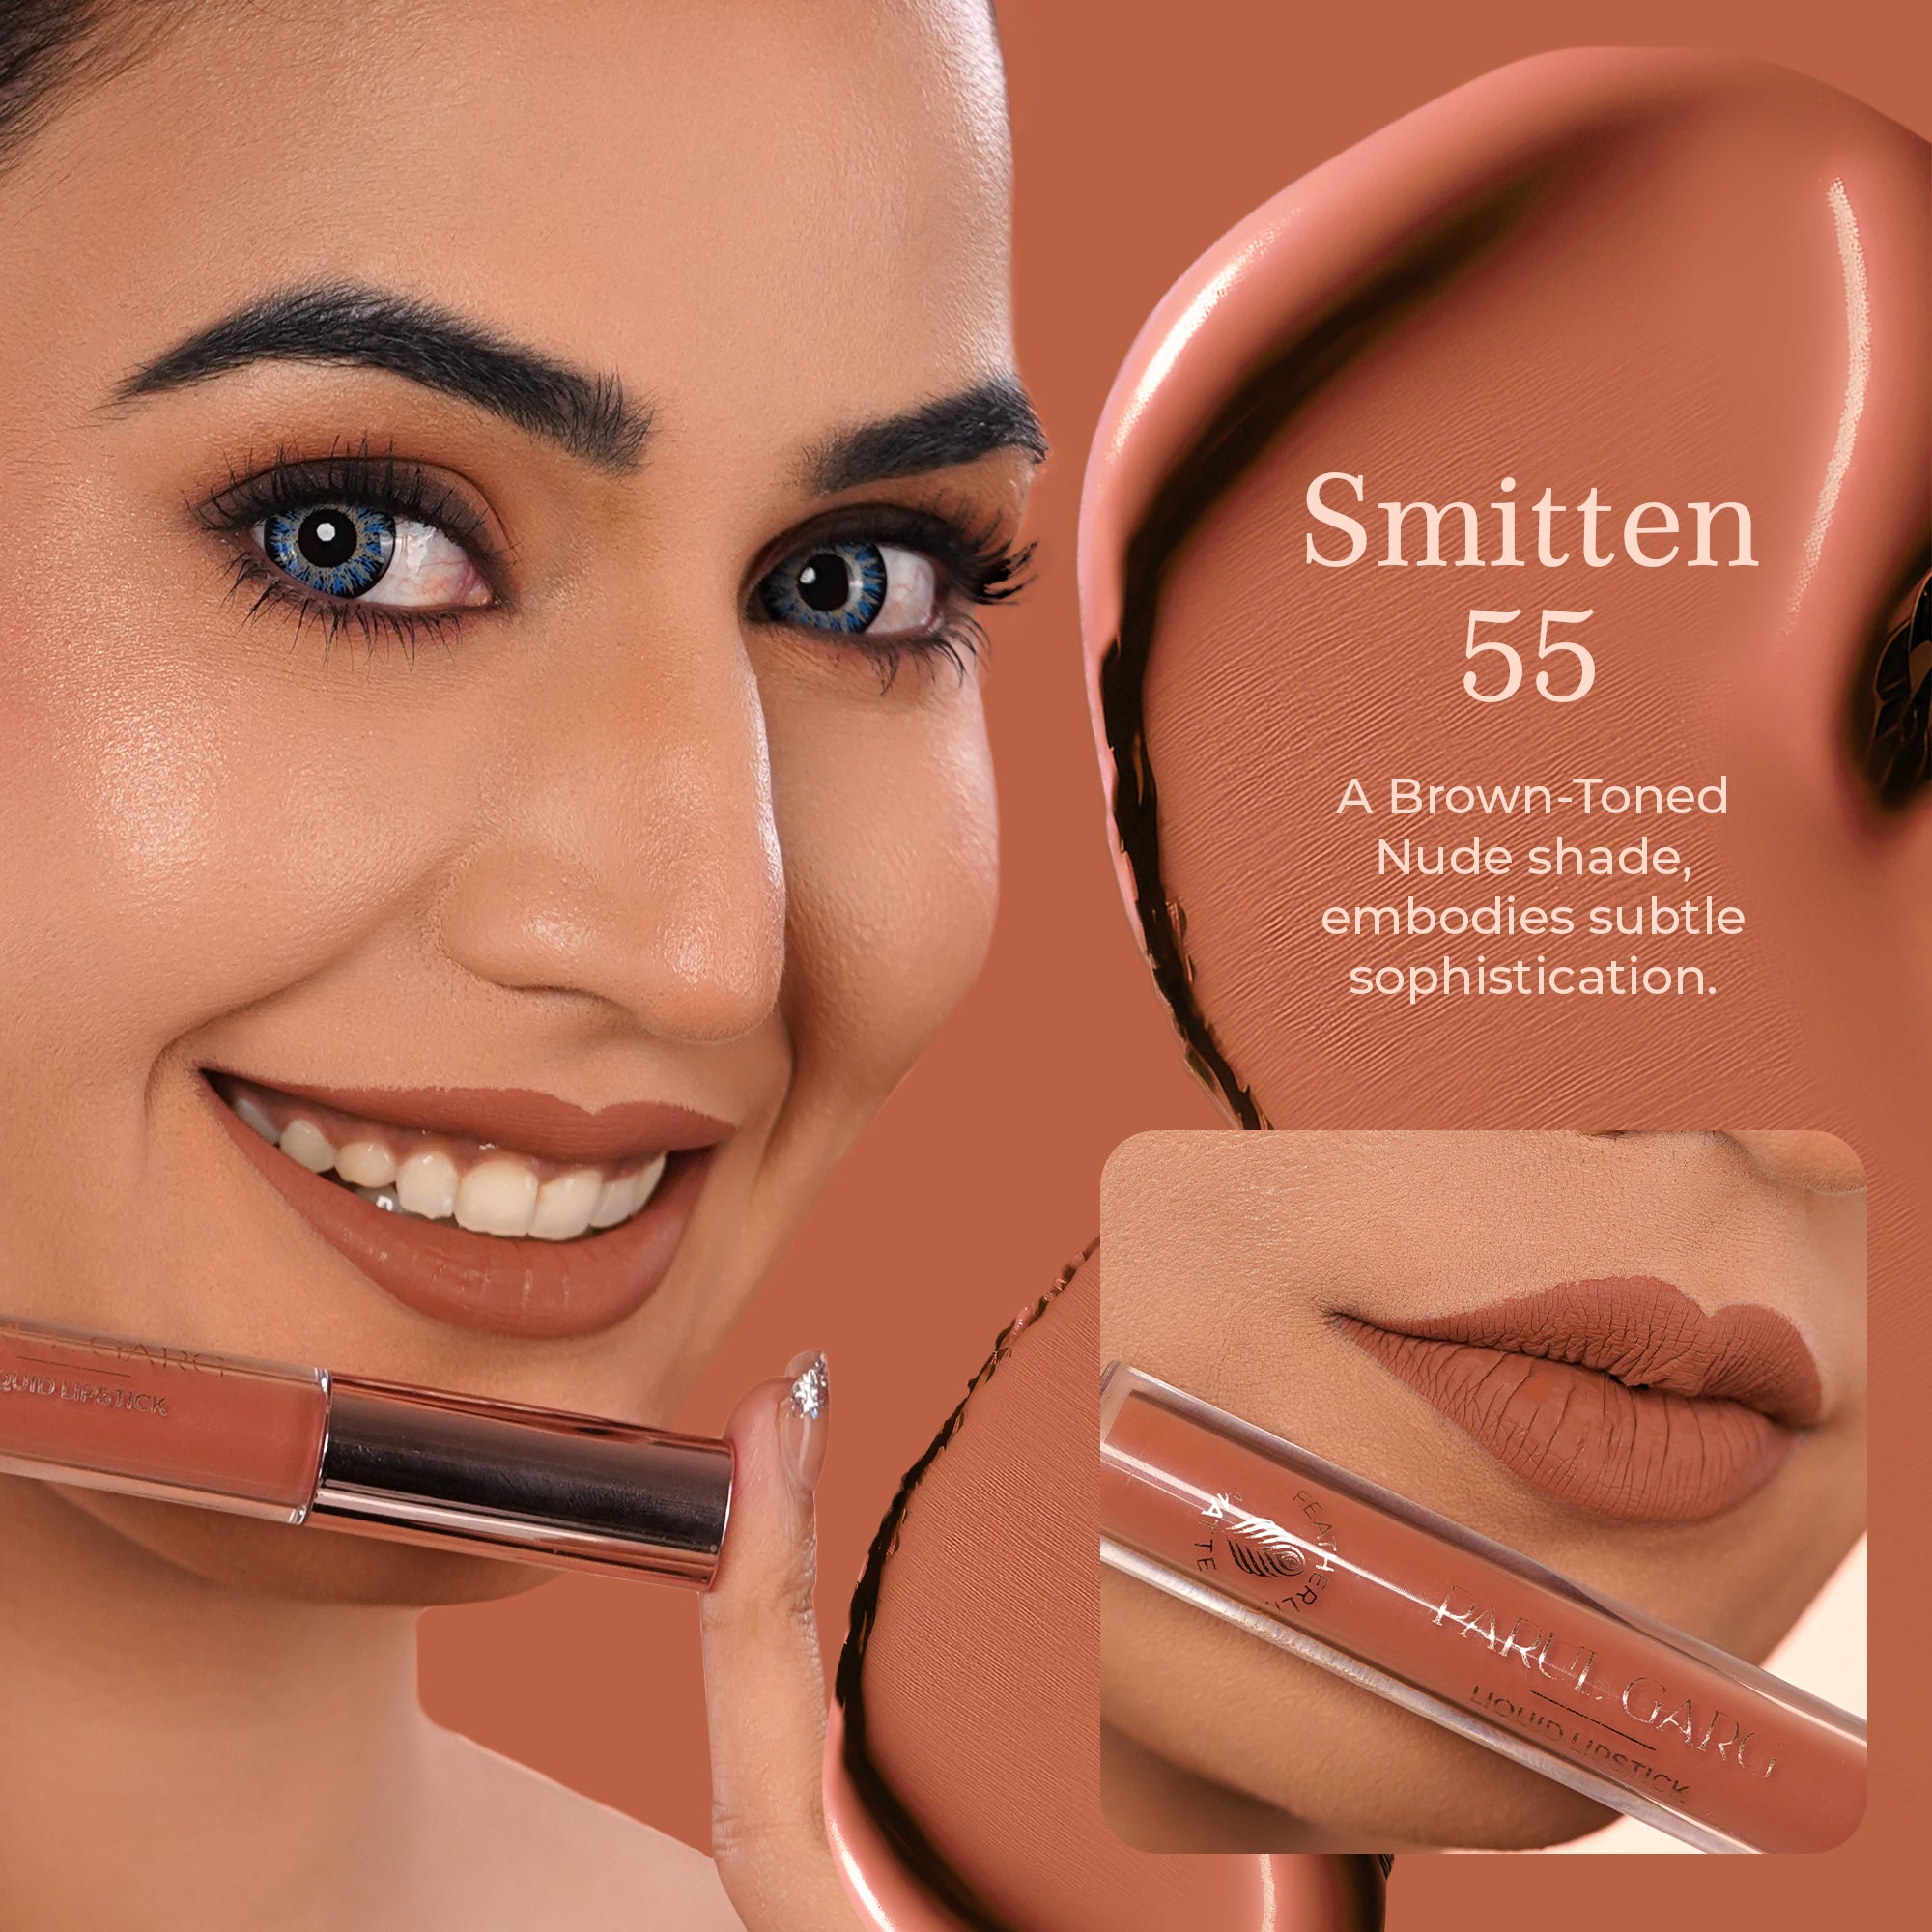 Featherlite Matte Liquid Lipstick: Smitten 55